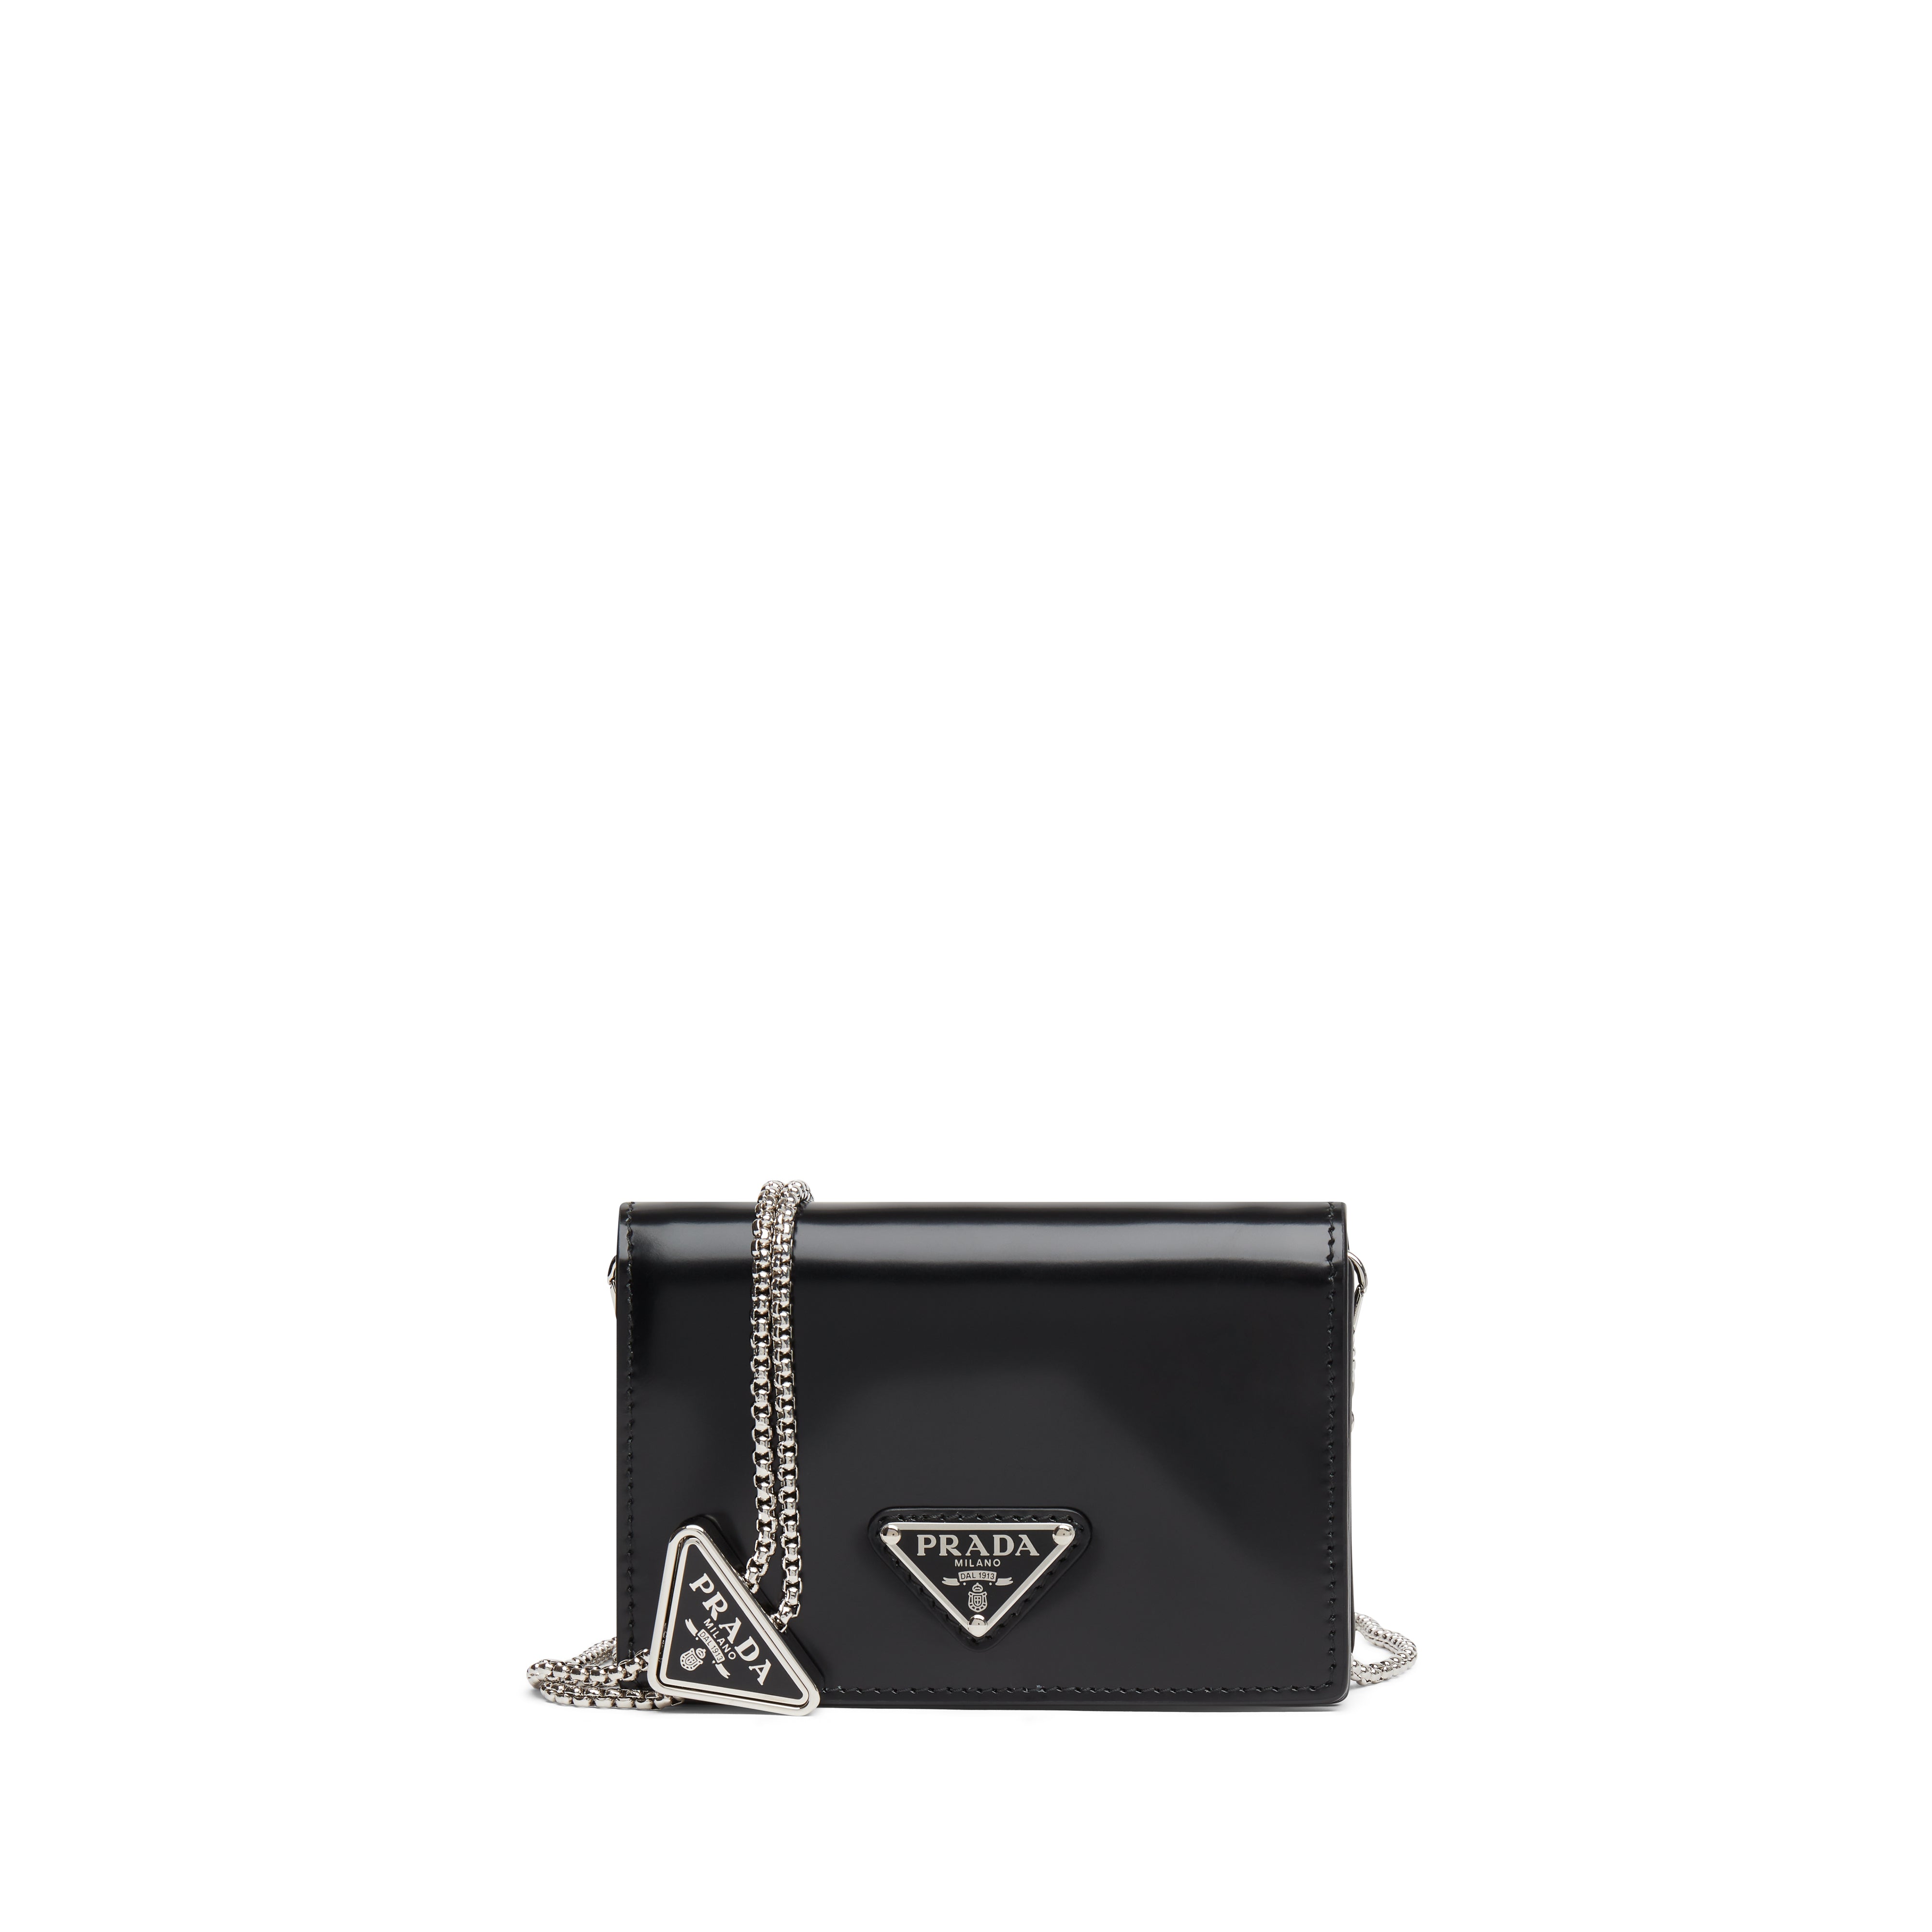 Prada - Women's Card Holder with Shoulder Strap - (Black)